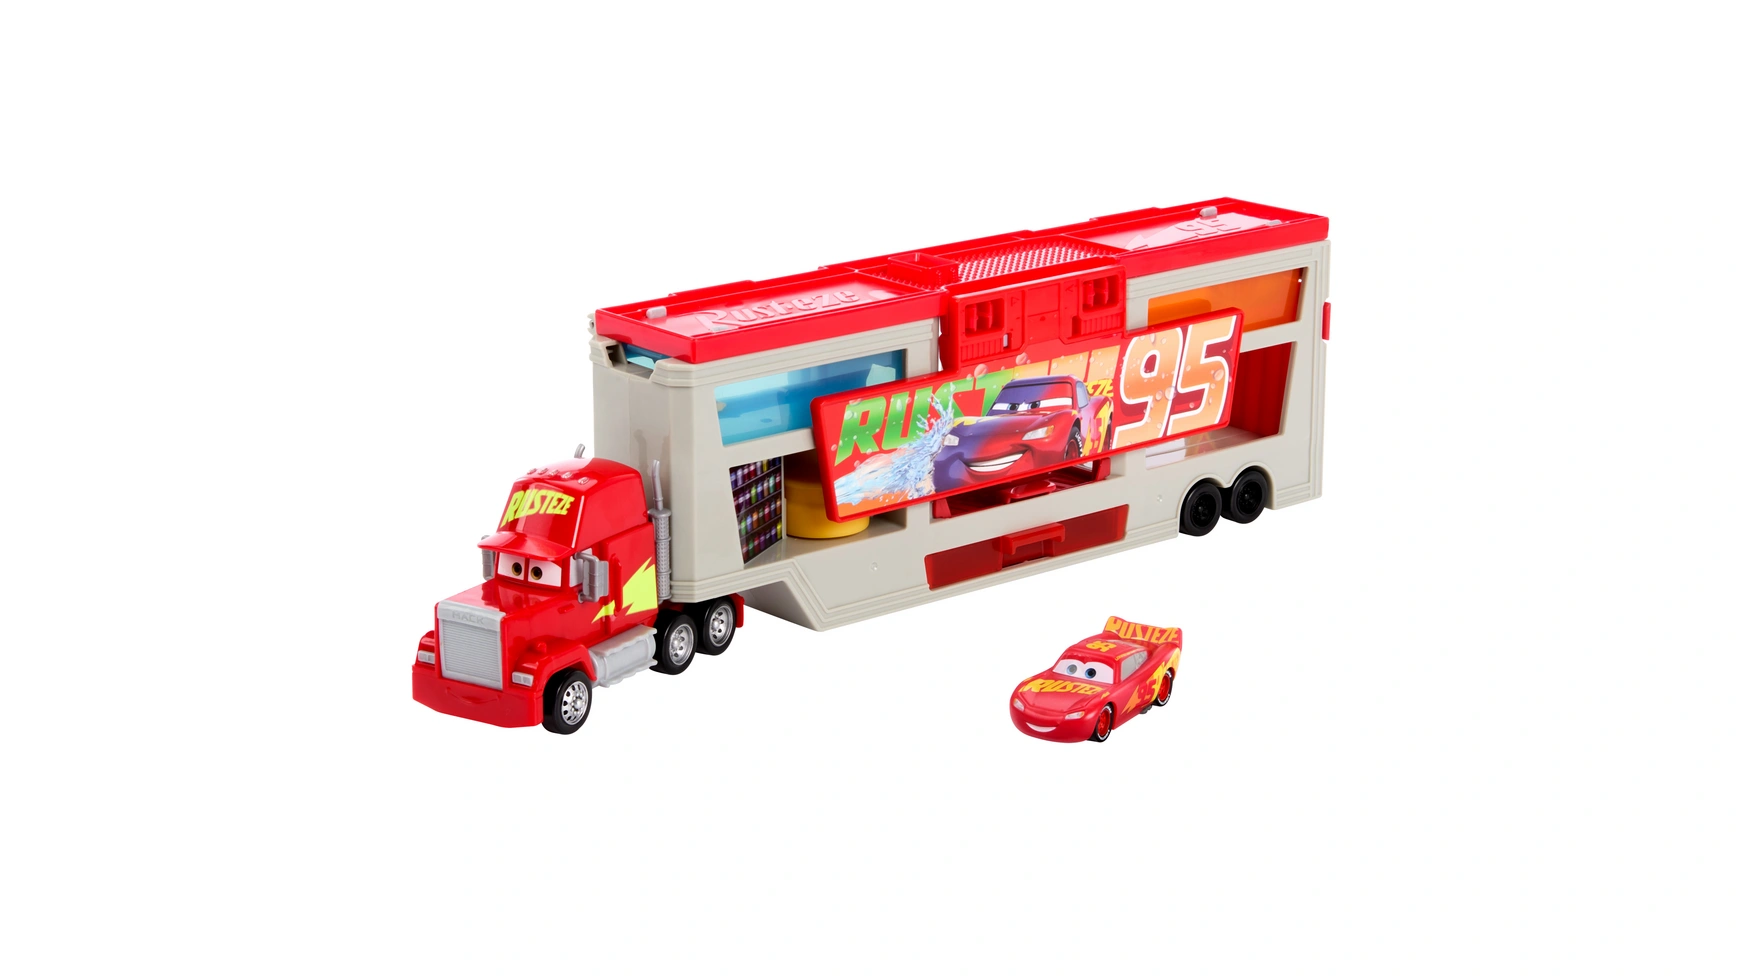 mack фургон ups с погрузчиком и паллетами Цветные сменщики цветов disney pixar cars Mattel